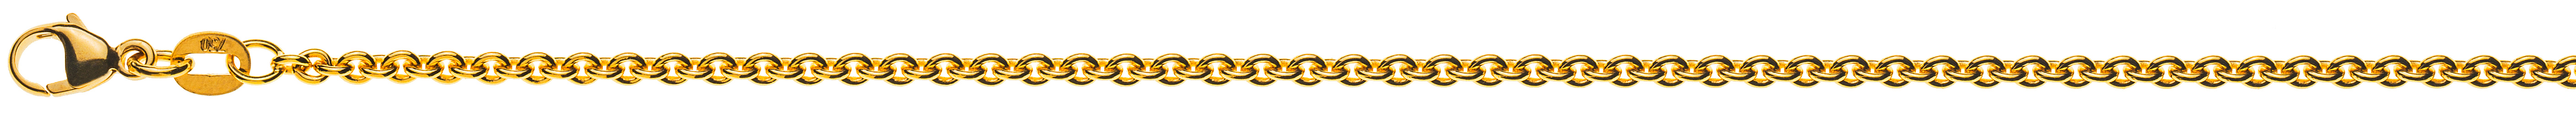 AURONOS Prestige Halskette Gelbgold 18K Rundanker 42cm 2.3mm